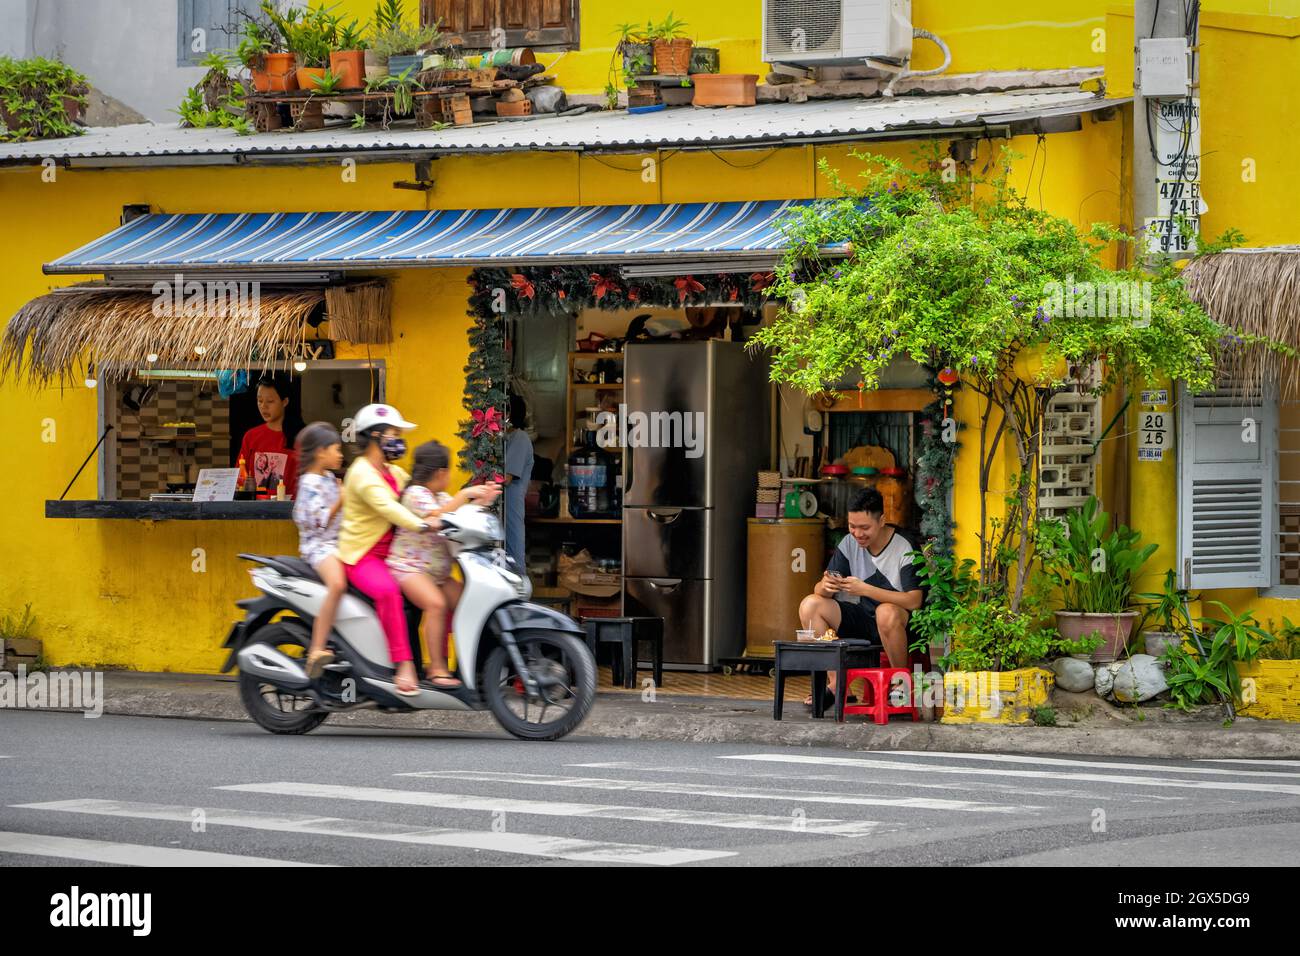 Traditionelles vietnamesisches Café mit einer Terrasse am Straßenrand, dekoriert mit Blumen. Die Besucher verbringen Zeit im Restaurant. Nha Trang, Vietnam: 2020-10-23 Stockfoto